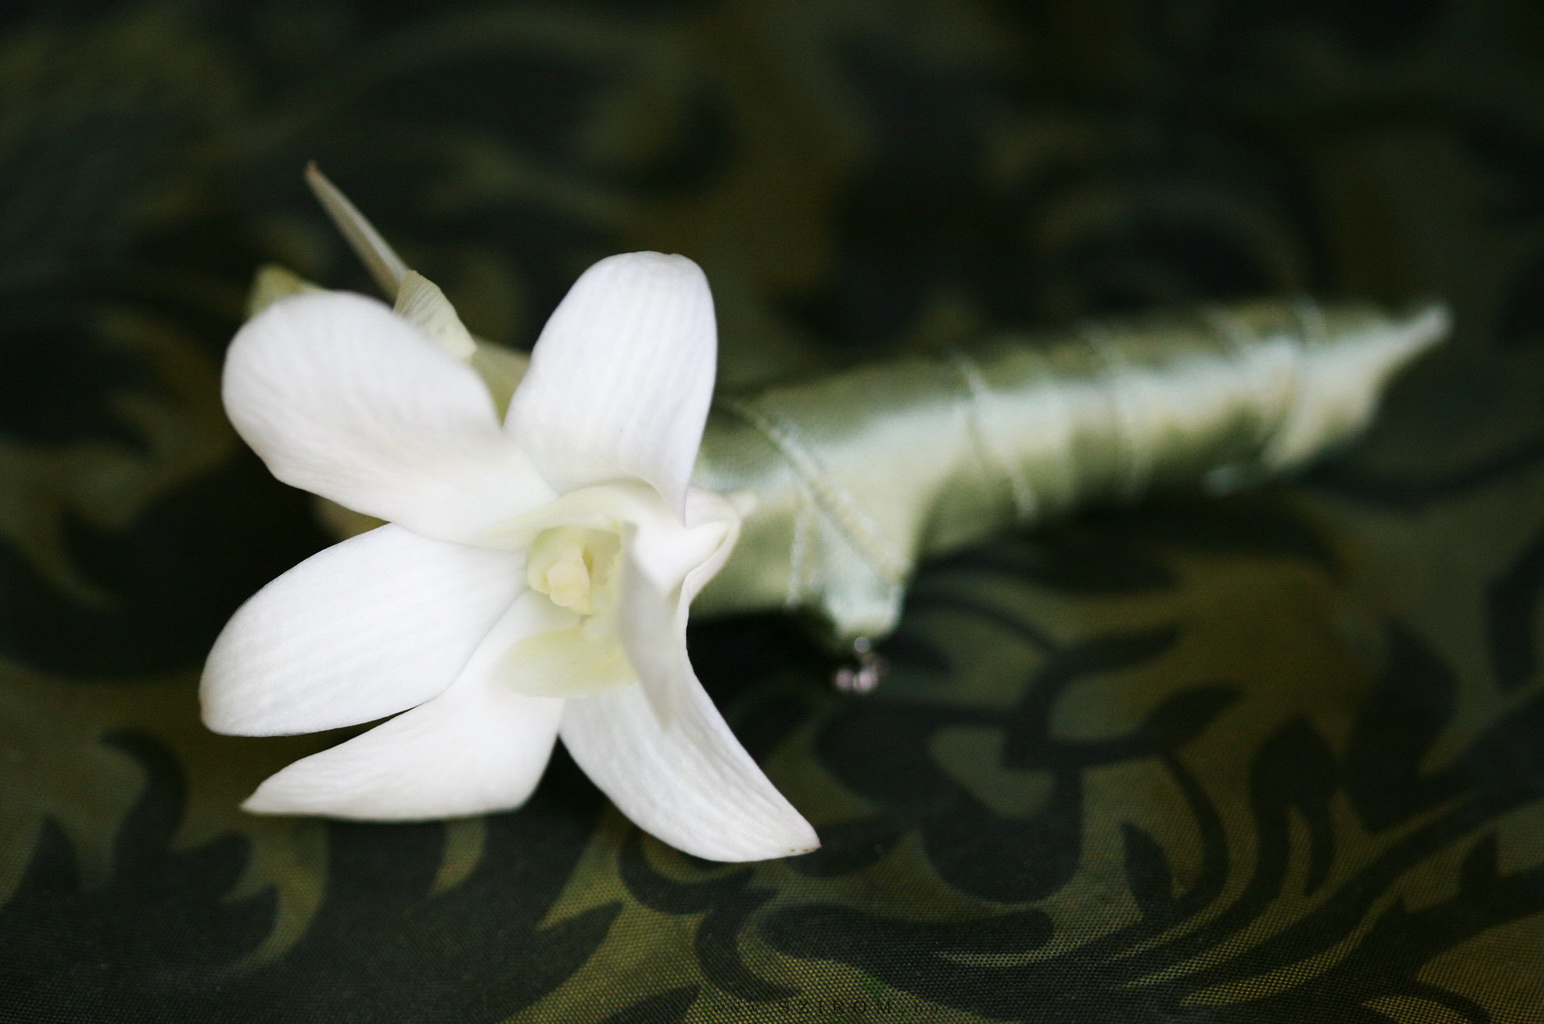 Virágküldés Budapest - Vőlegény kitűző orchideából (fehér)